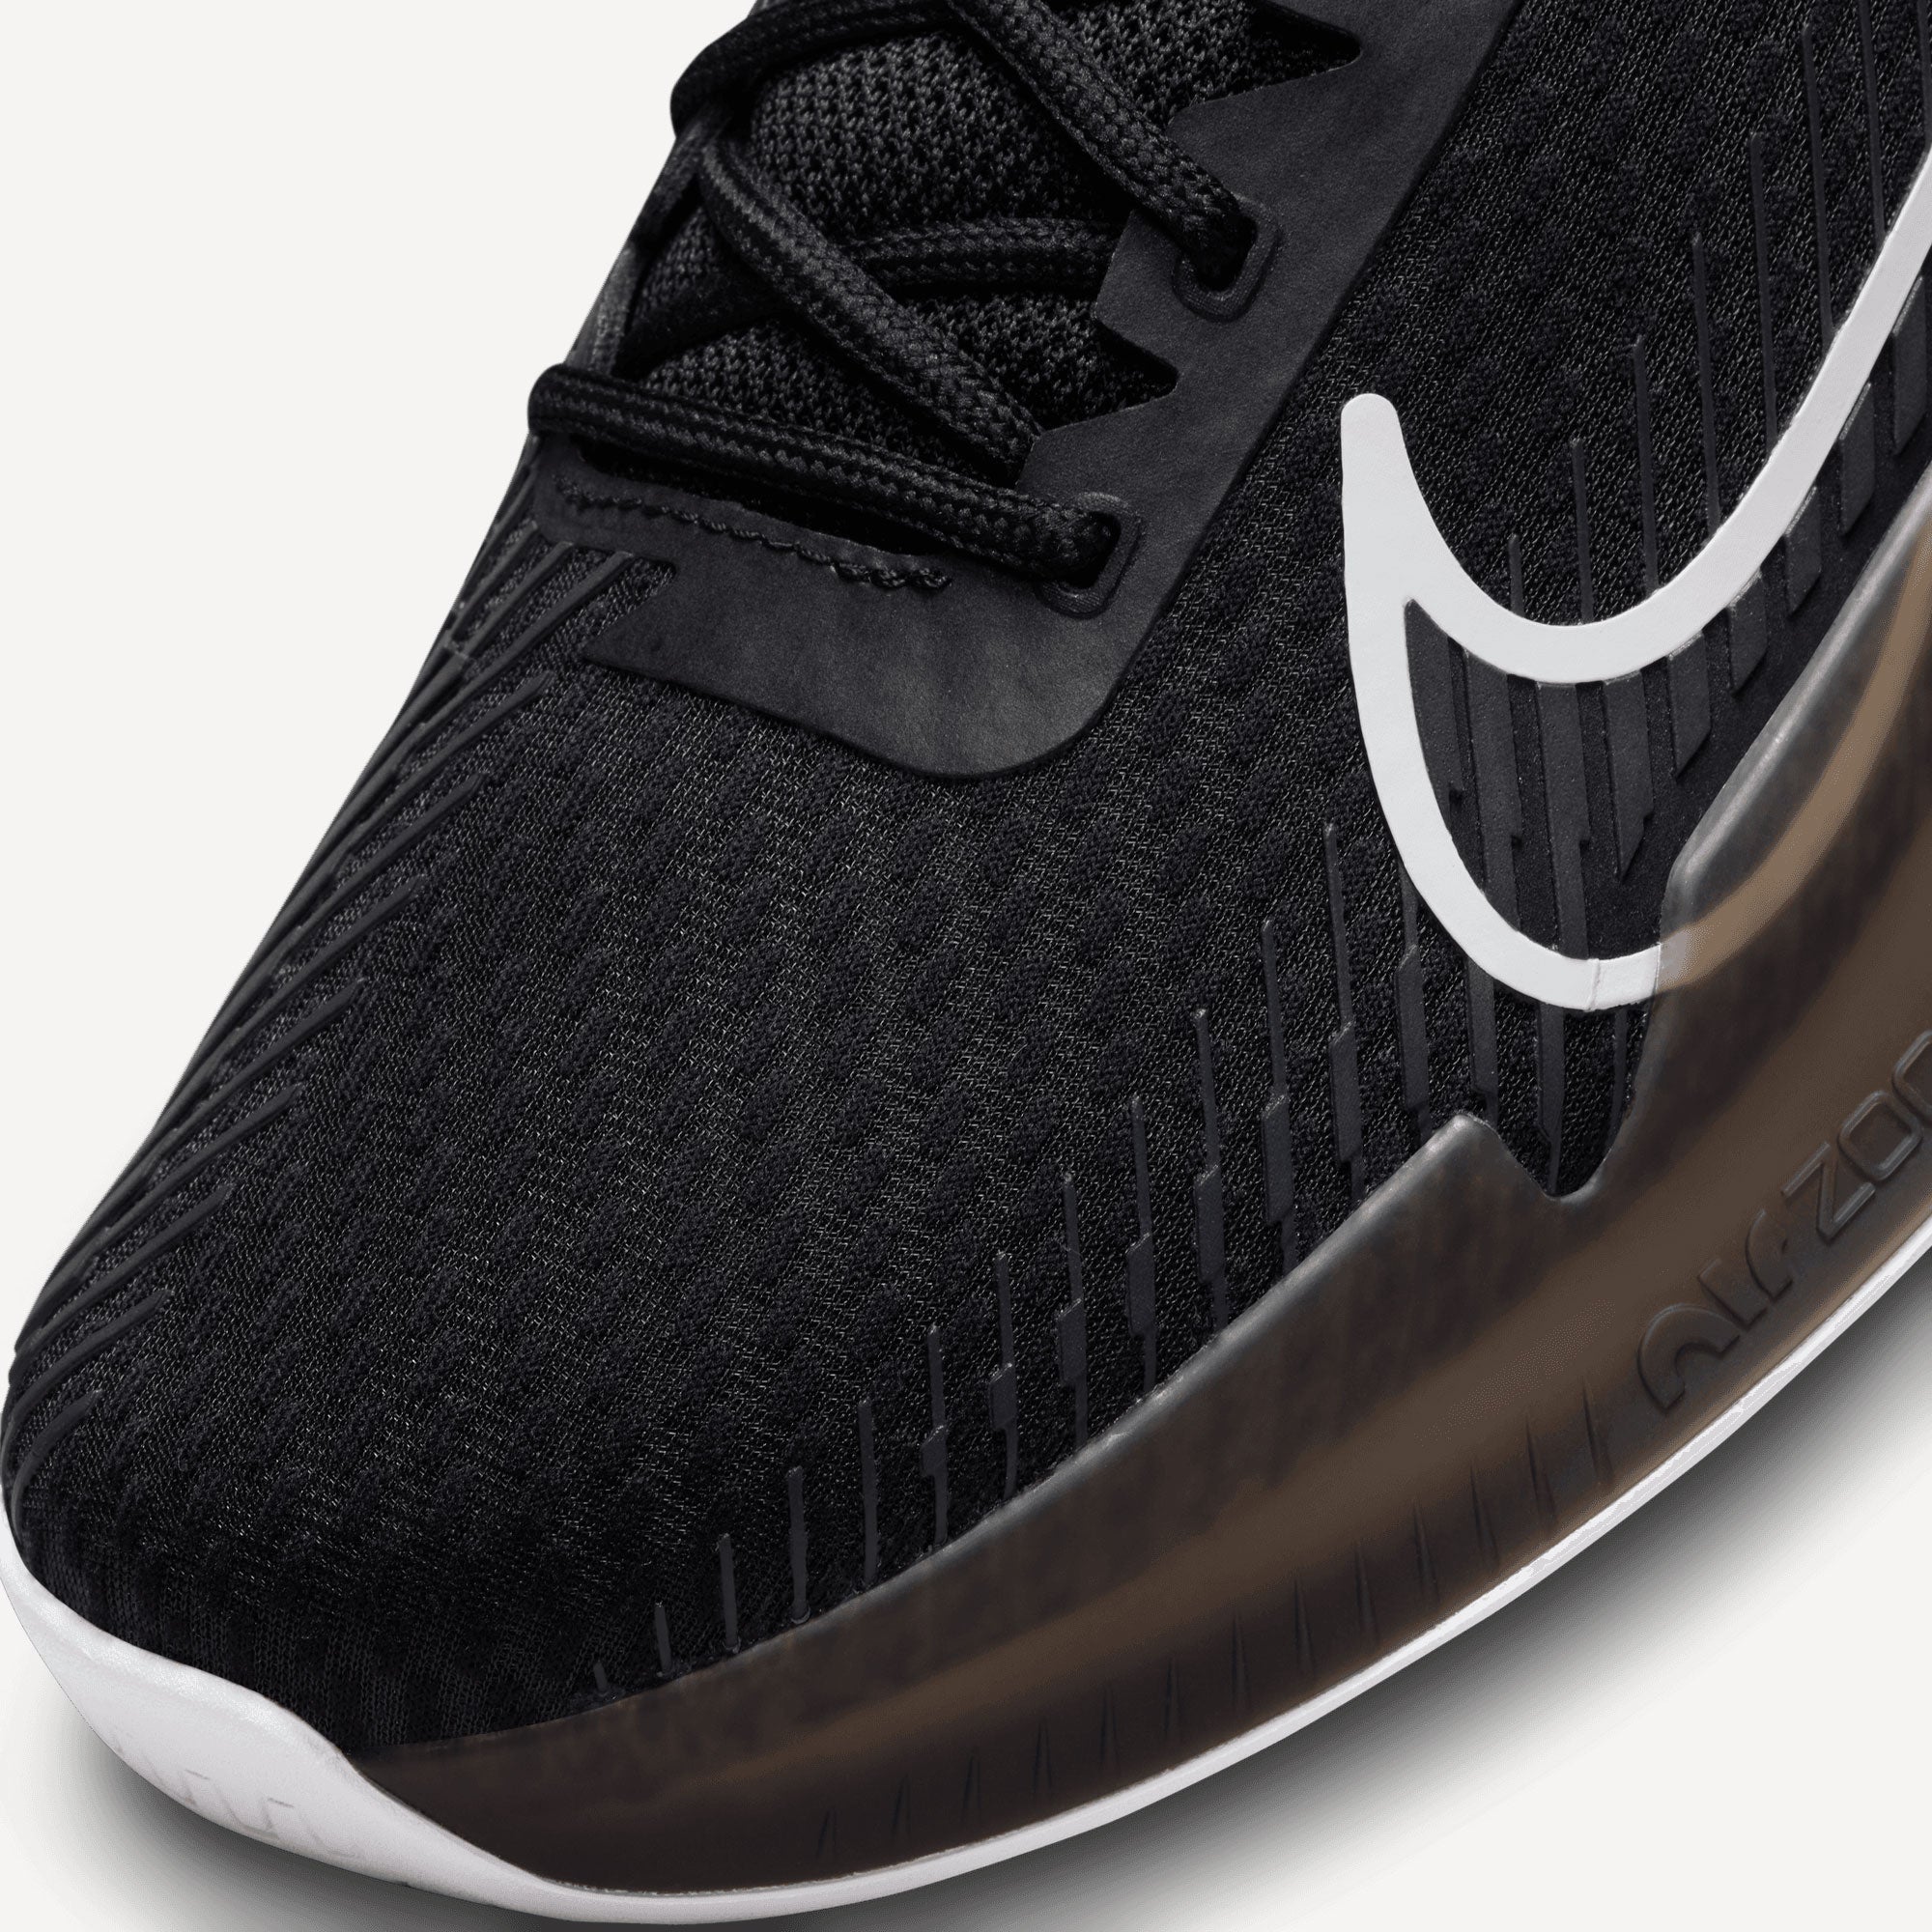 NikeCourt Air Zoom Vapor 11 Men's Hard Court Tennis Shoes Black (7)